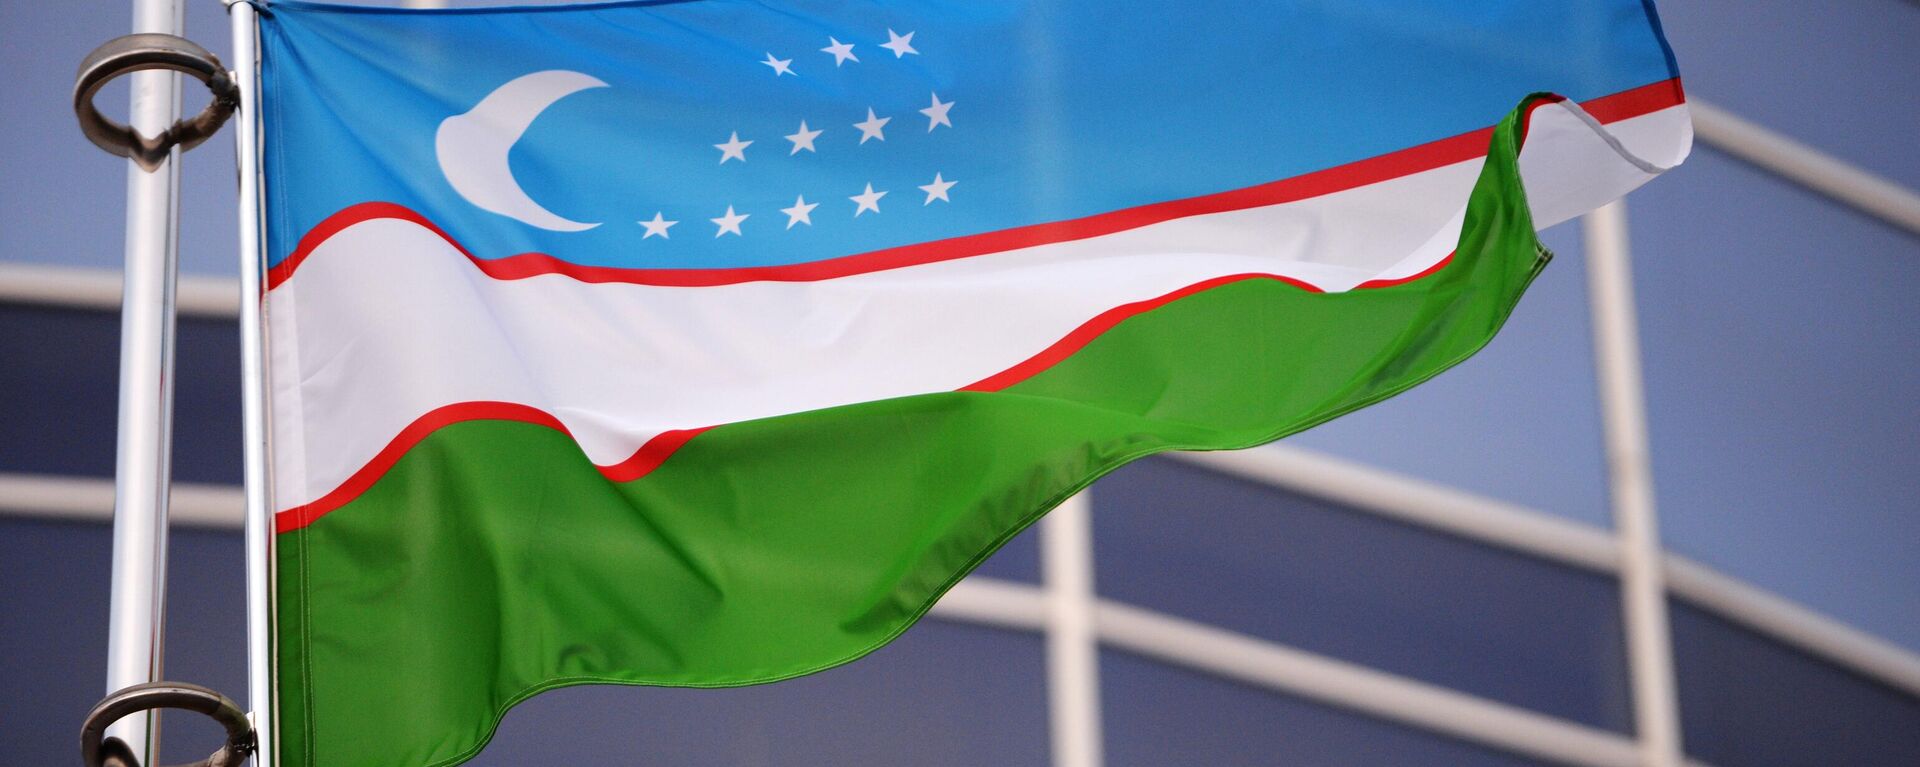 Флаг Узбекистана - Sputnik Узбекистан, 1920, 19.11.2019